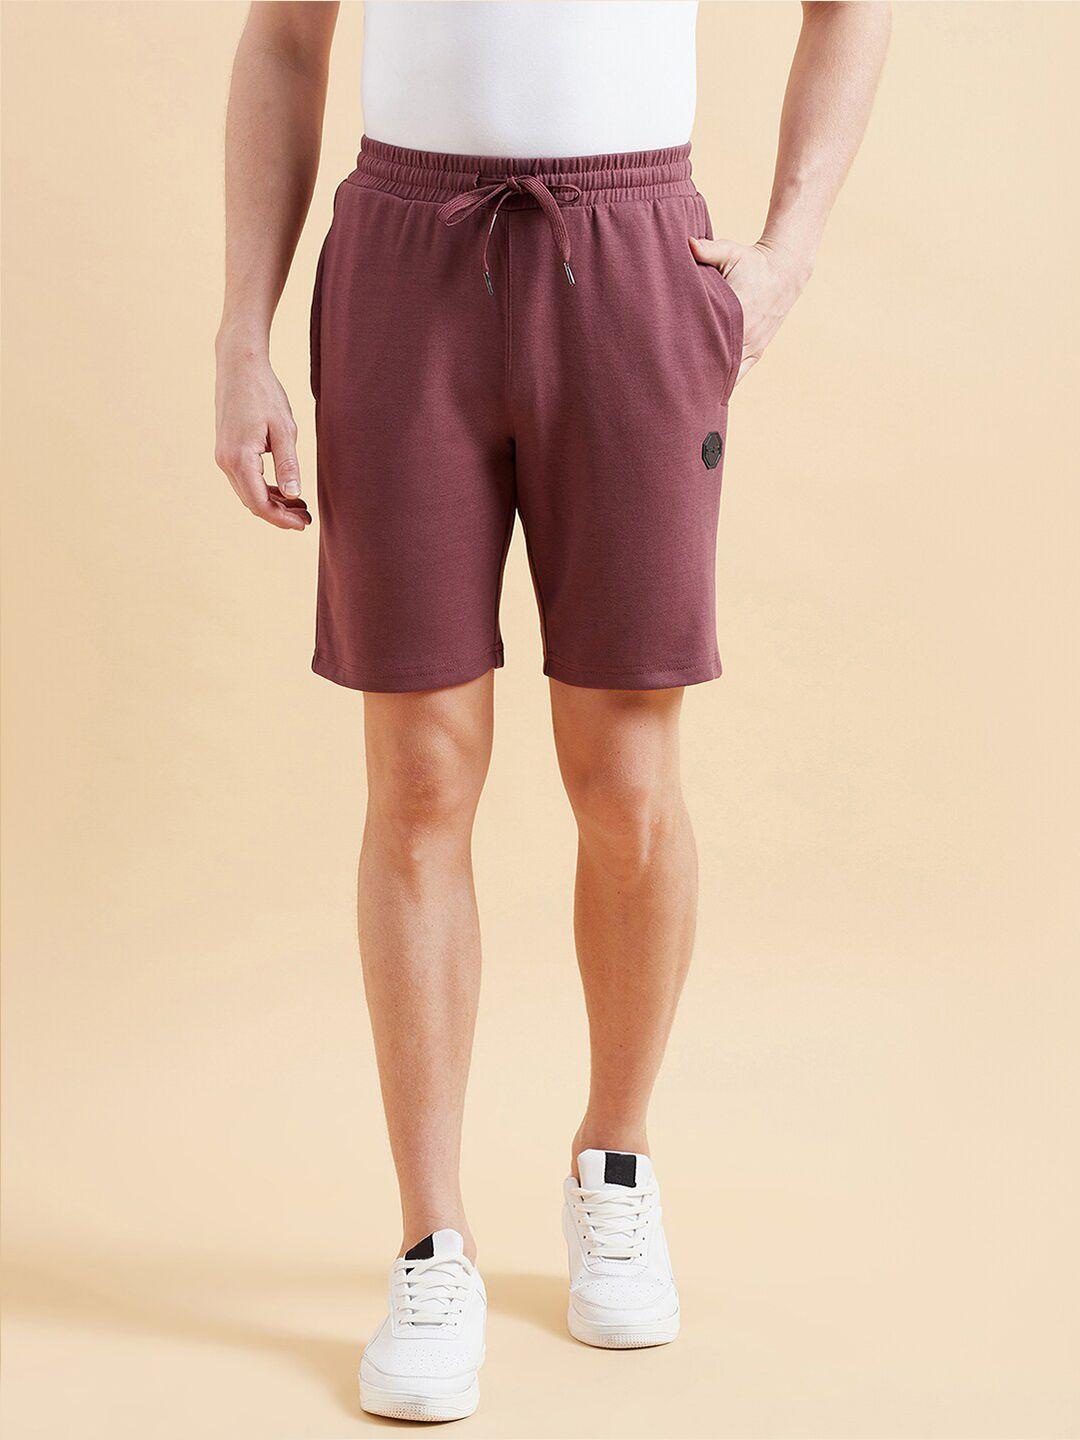 sweet-dreams-men-brown-mid-rise-regular-shorts